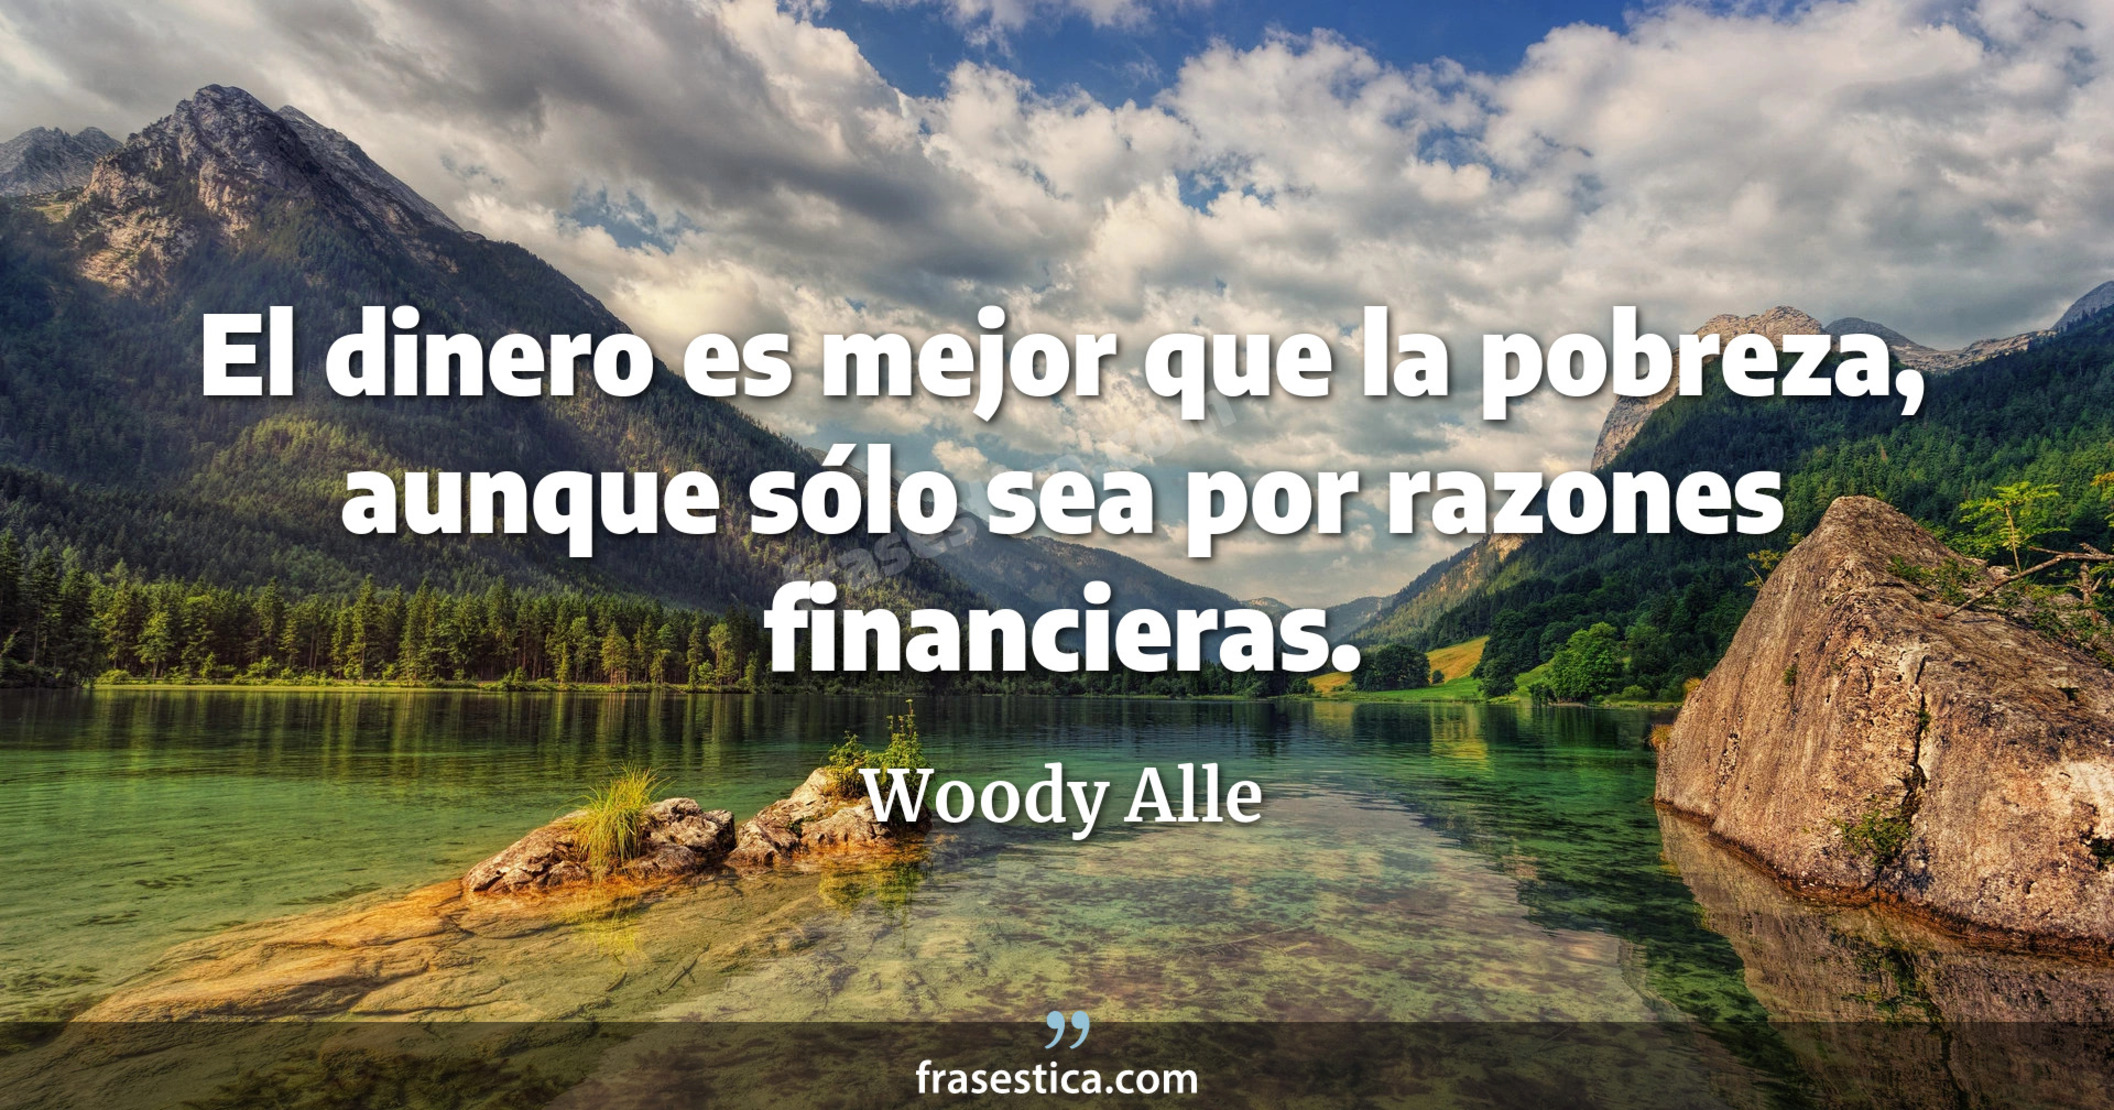 El dinero es mejor que la pobreza, aunque sólo sea por razones financieras. - Woody Alle